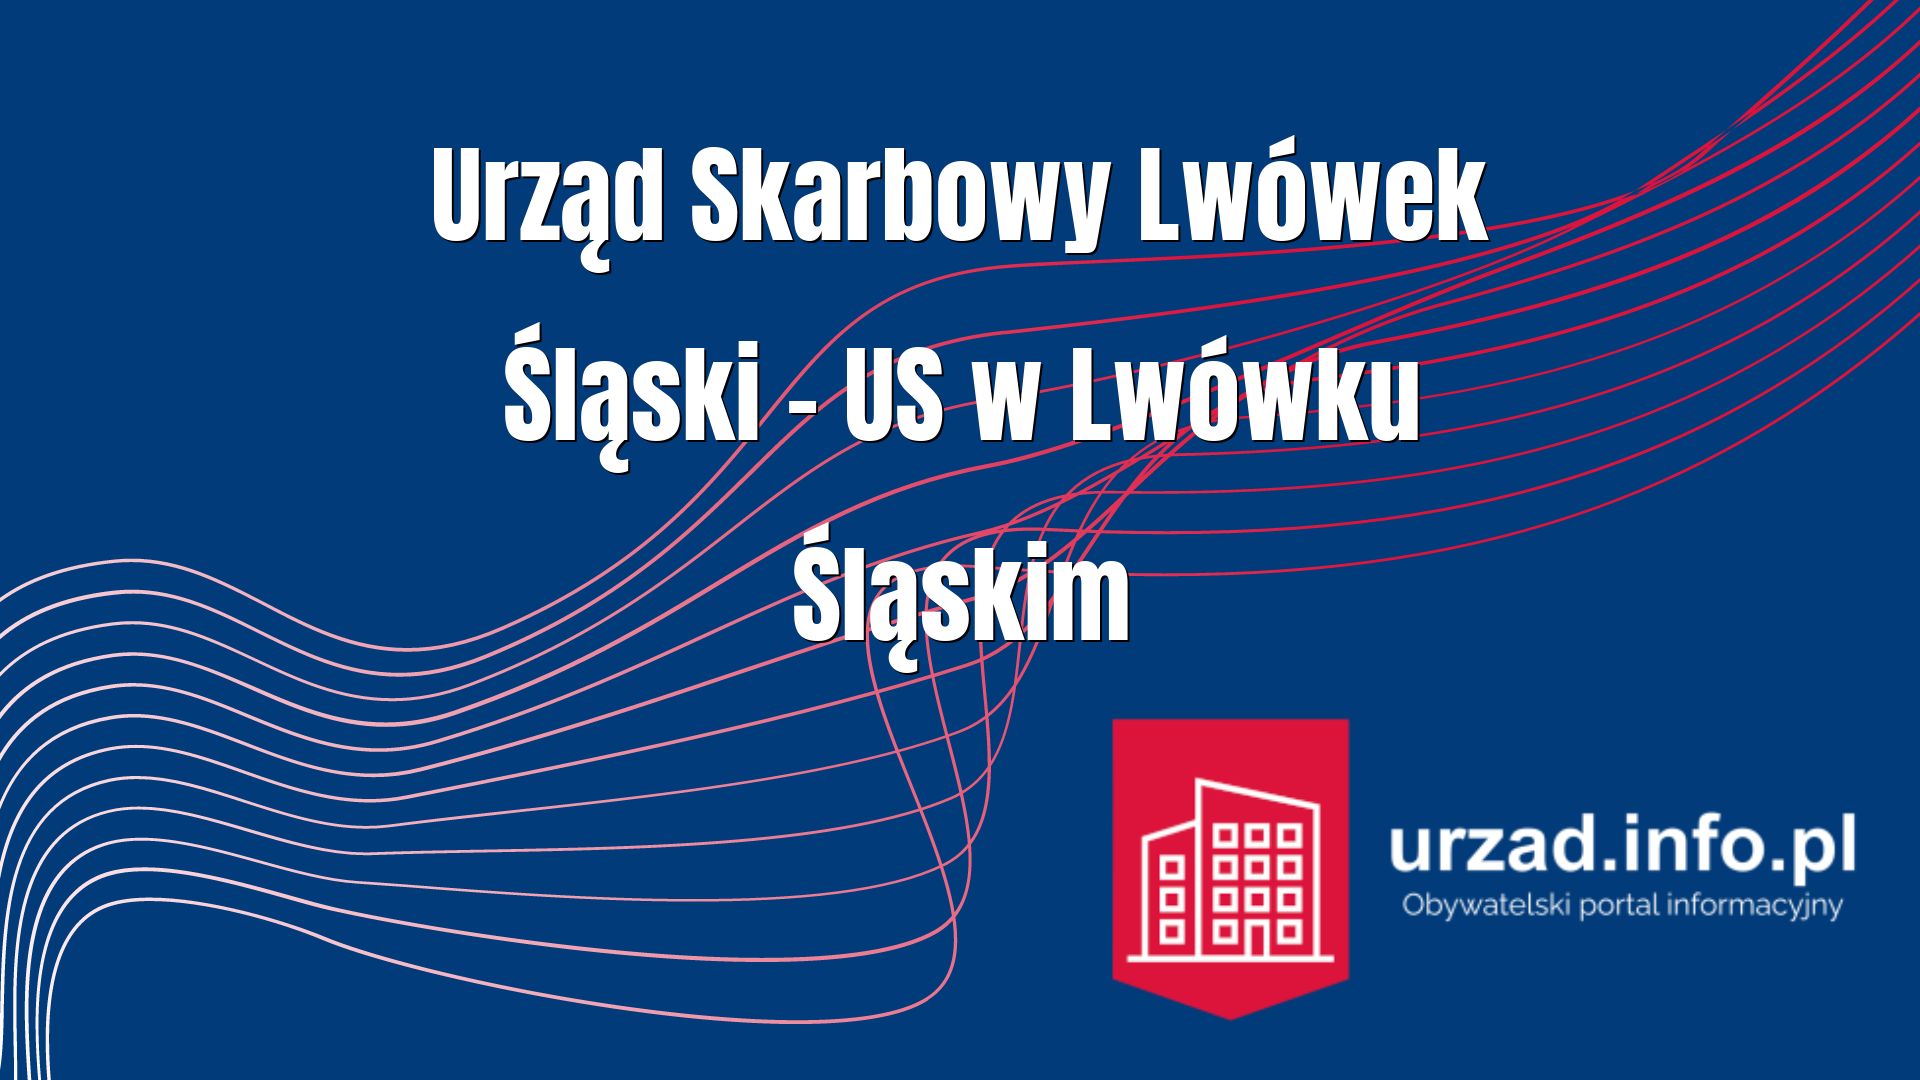 Urząd Skarbowy Lwówek Śląski – US w Lwówku Śląskim